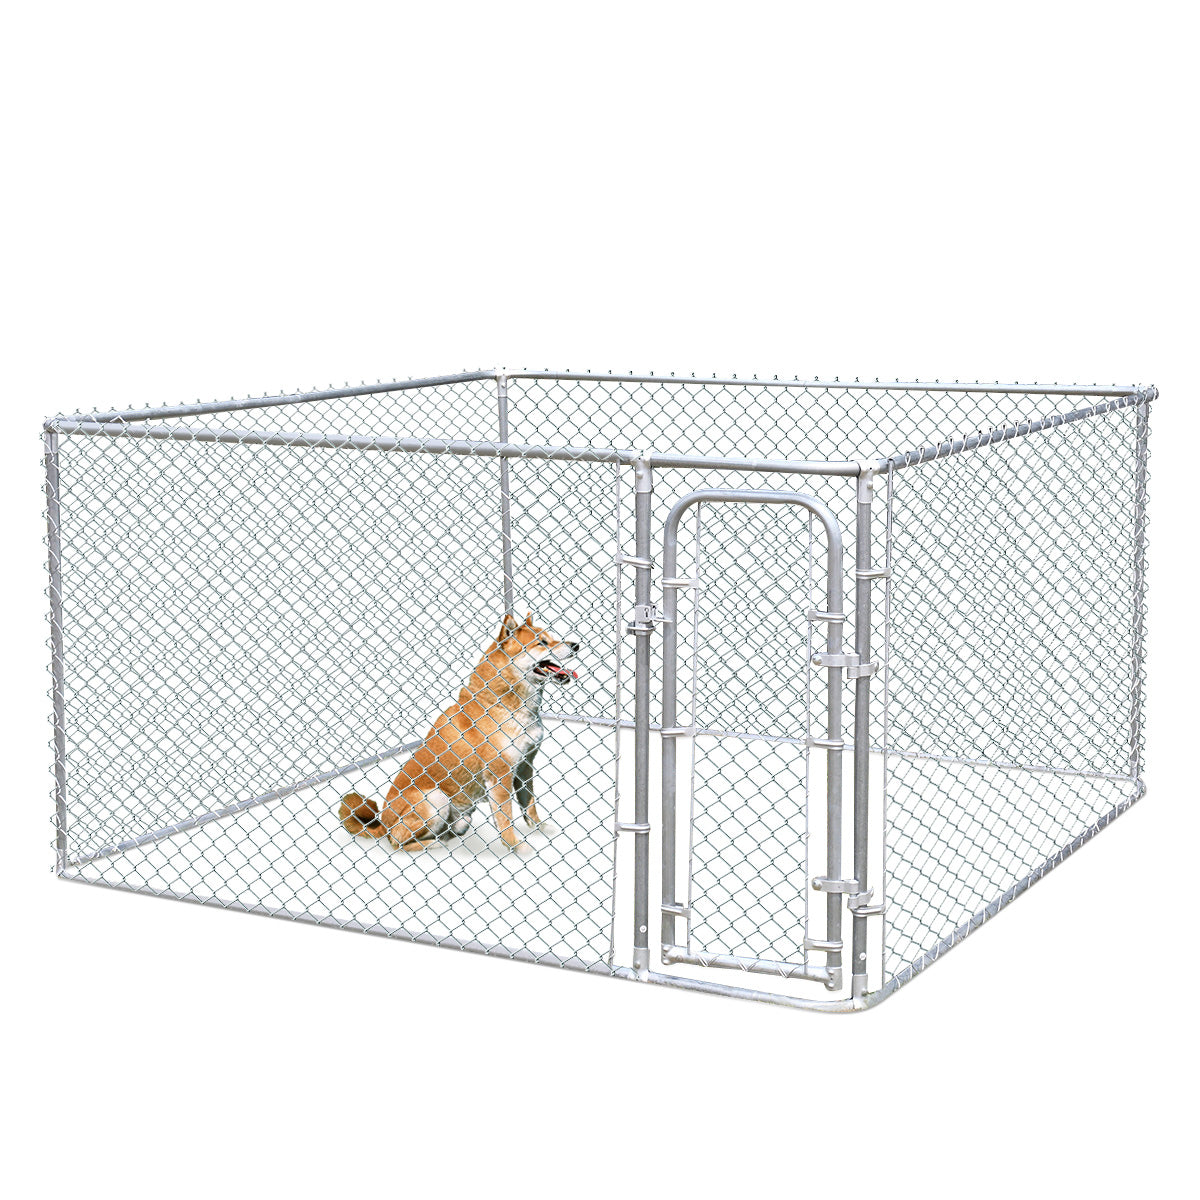 7.5 x7 5 dog kennel